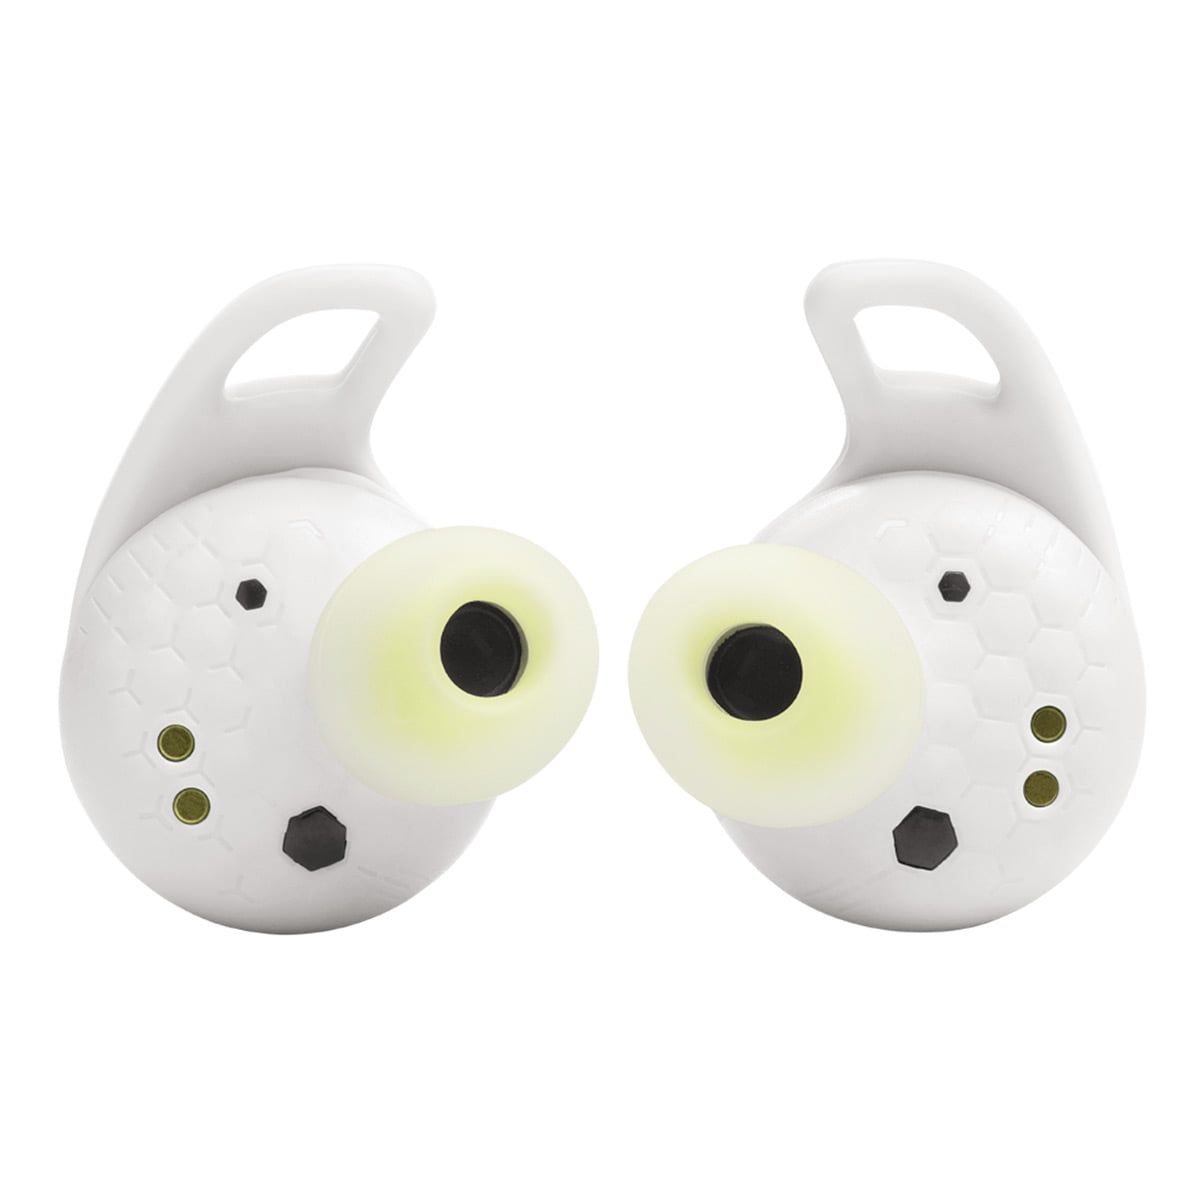 JBL Reflect Aero True Wireless Earbuds with Adaptive Noise Cancelling  (White) | In-Ear-Kopfhörer